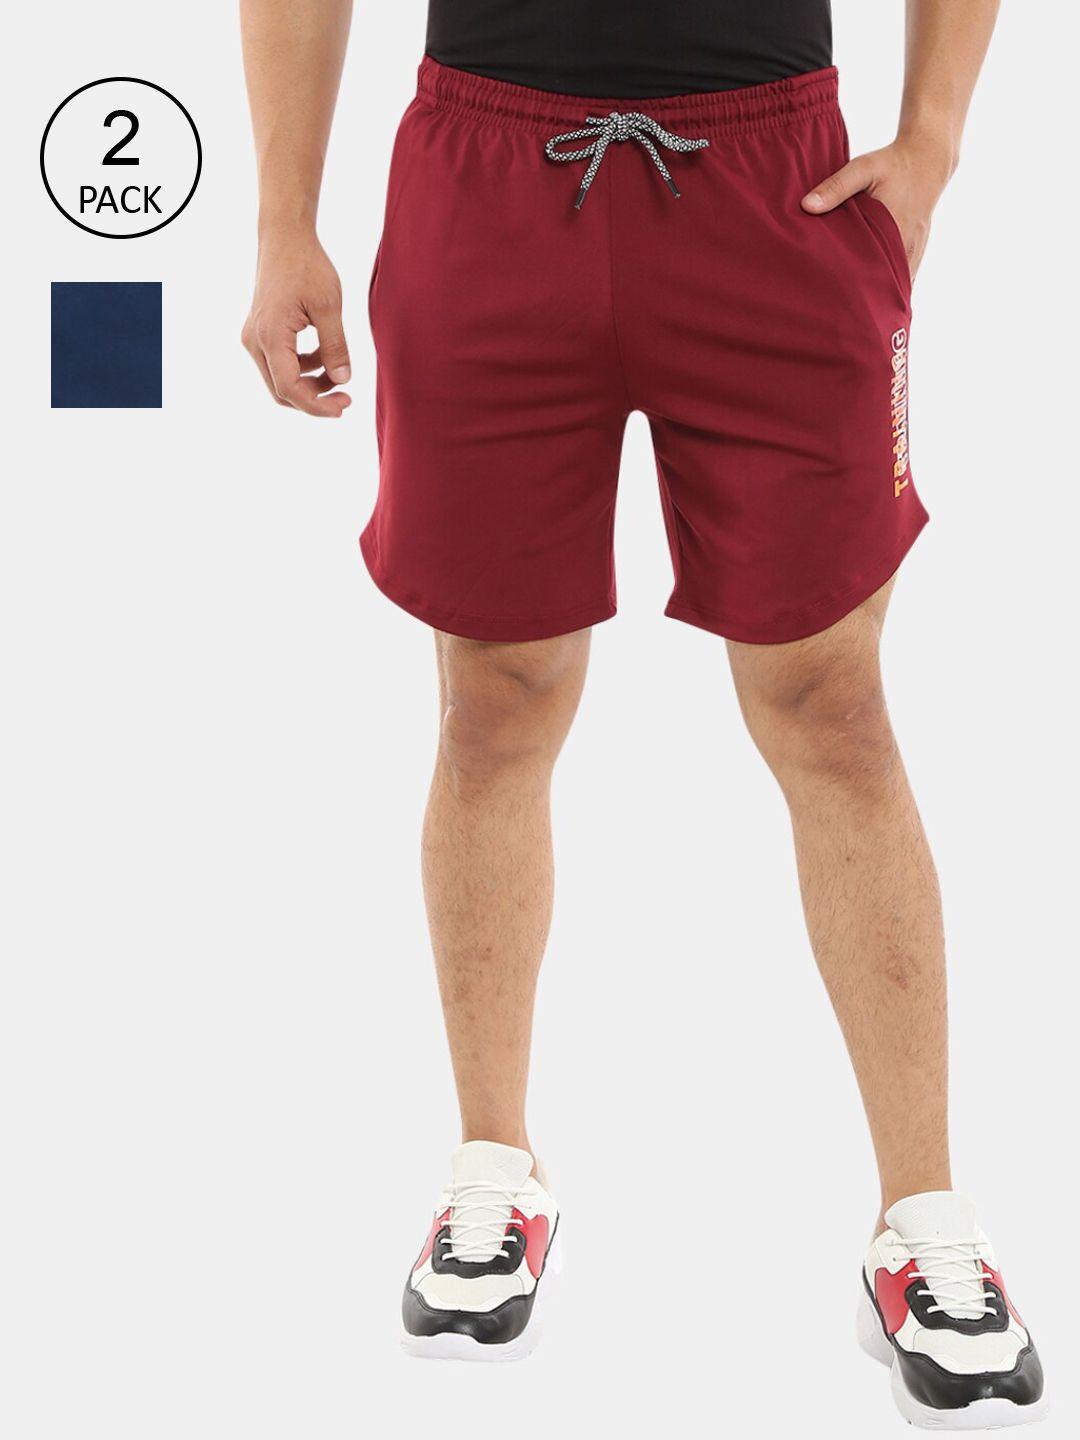 v-mart men pack of 2 teal & maroon sports shorts